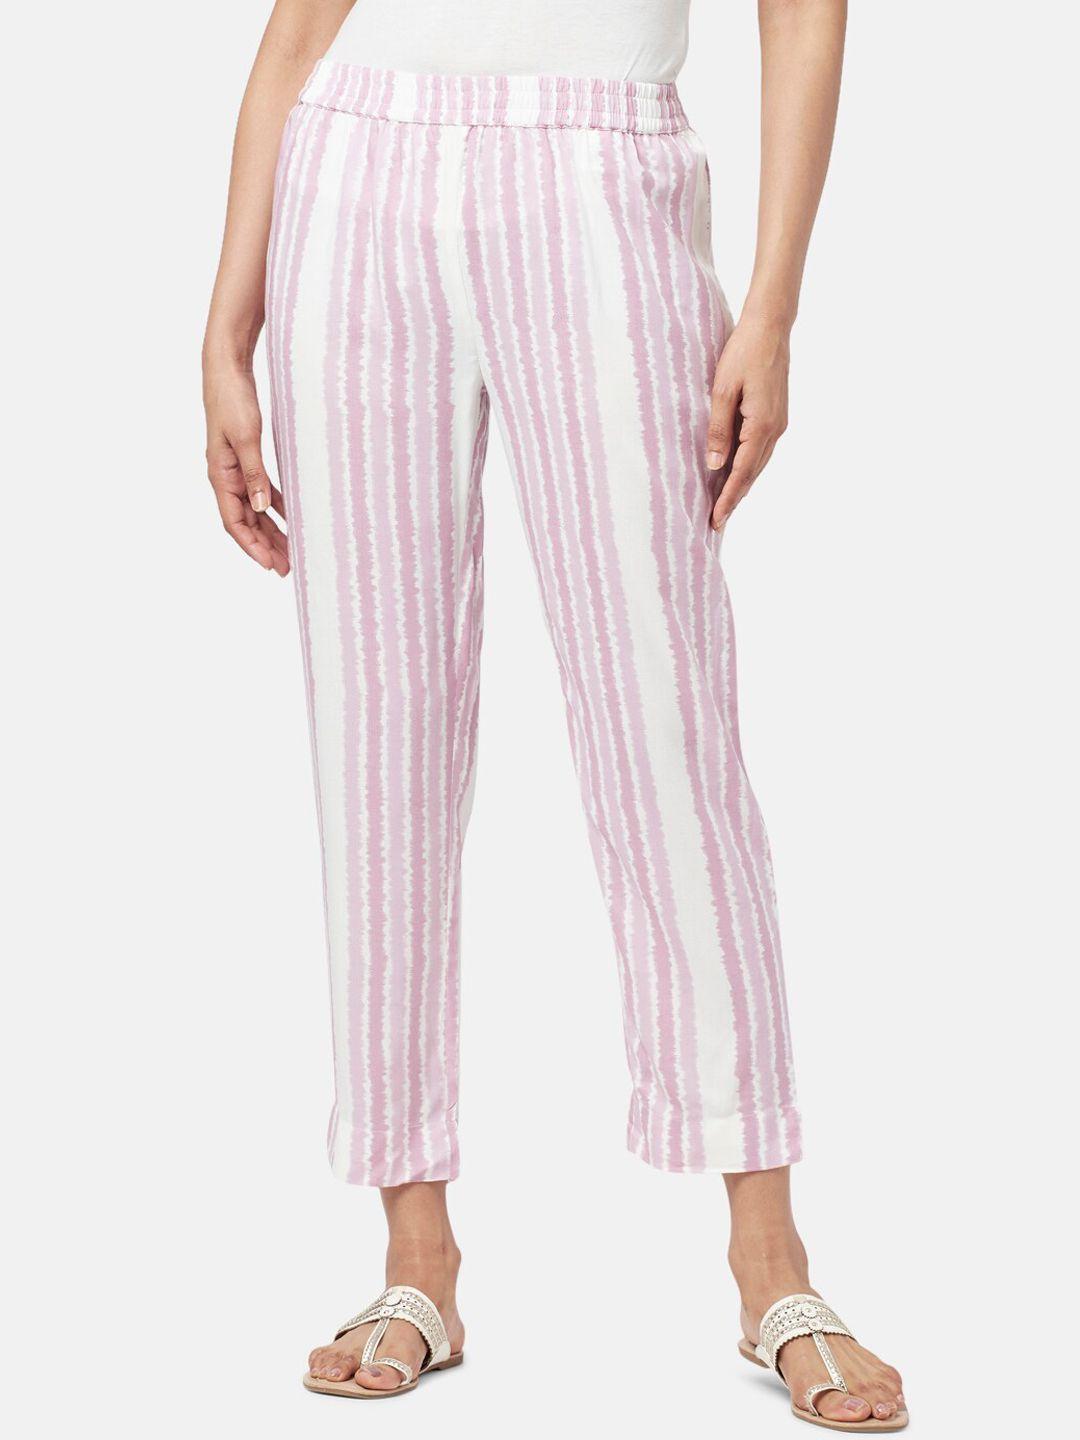 rangmanch-by-pantaloons-women-striped-trousers